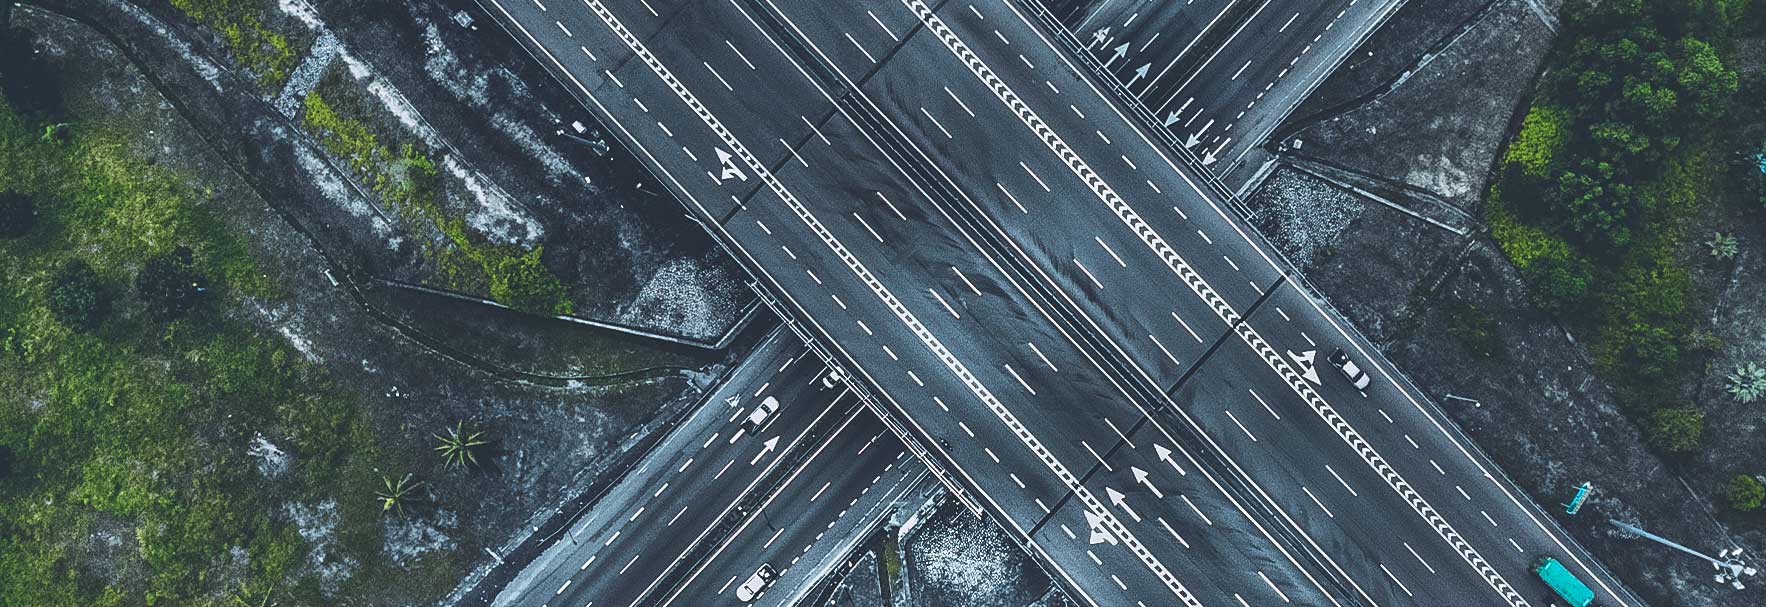 Vista aérea de uma grande rodovia com várias faixas